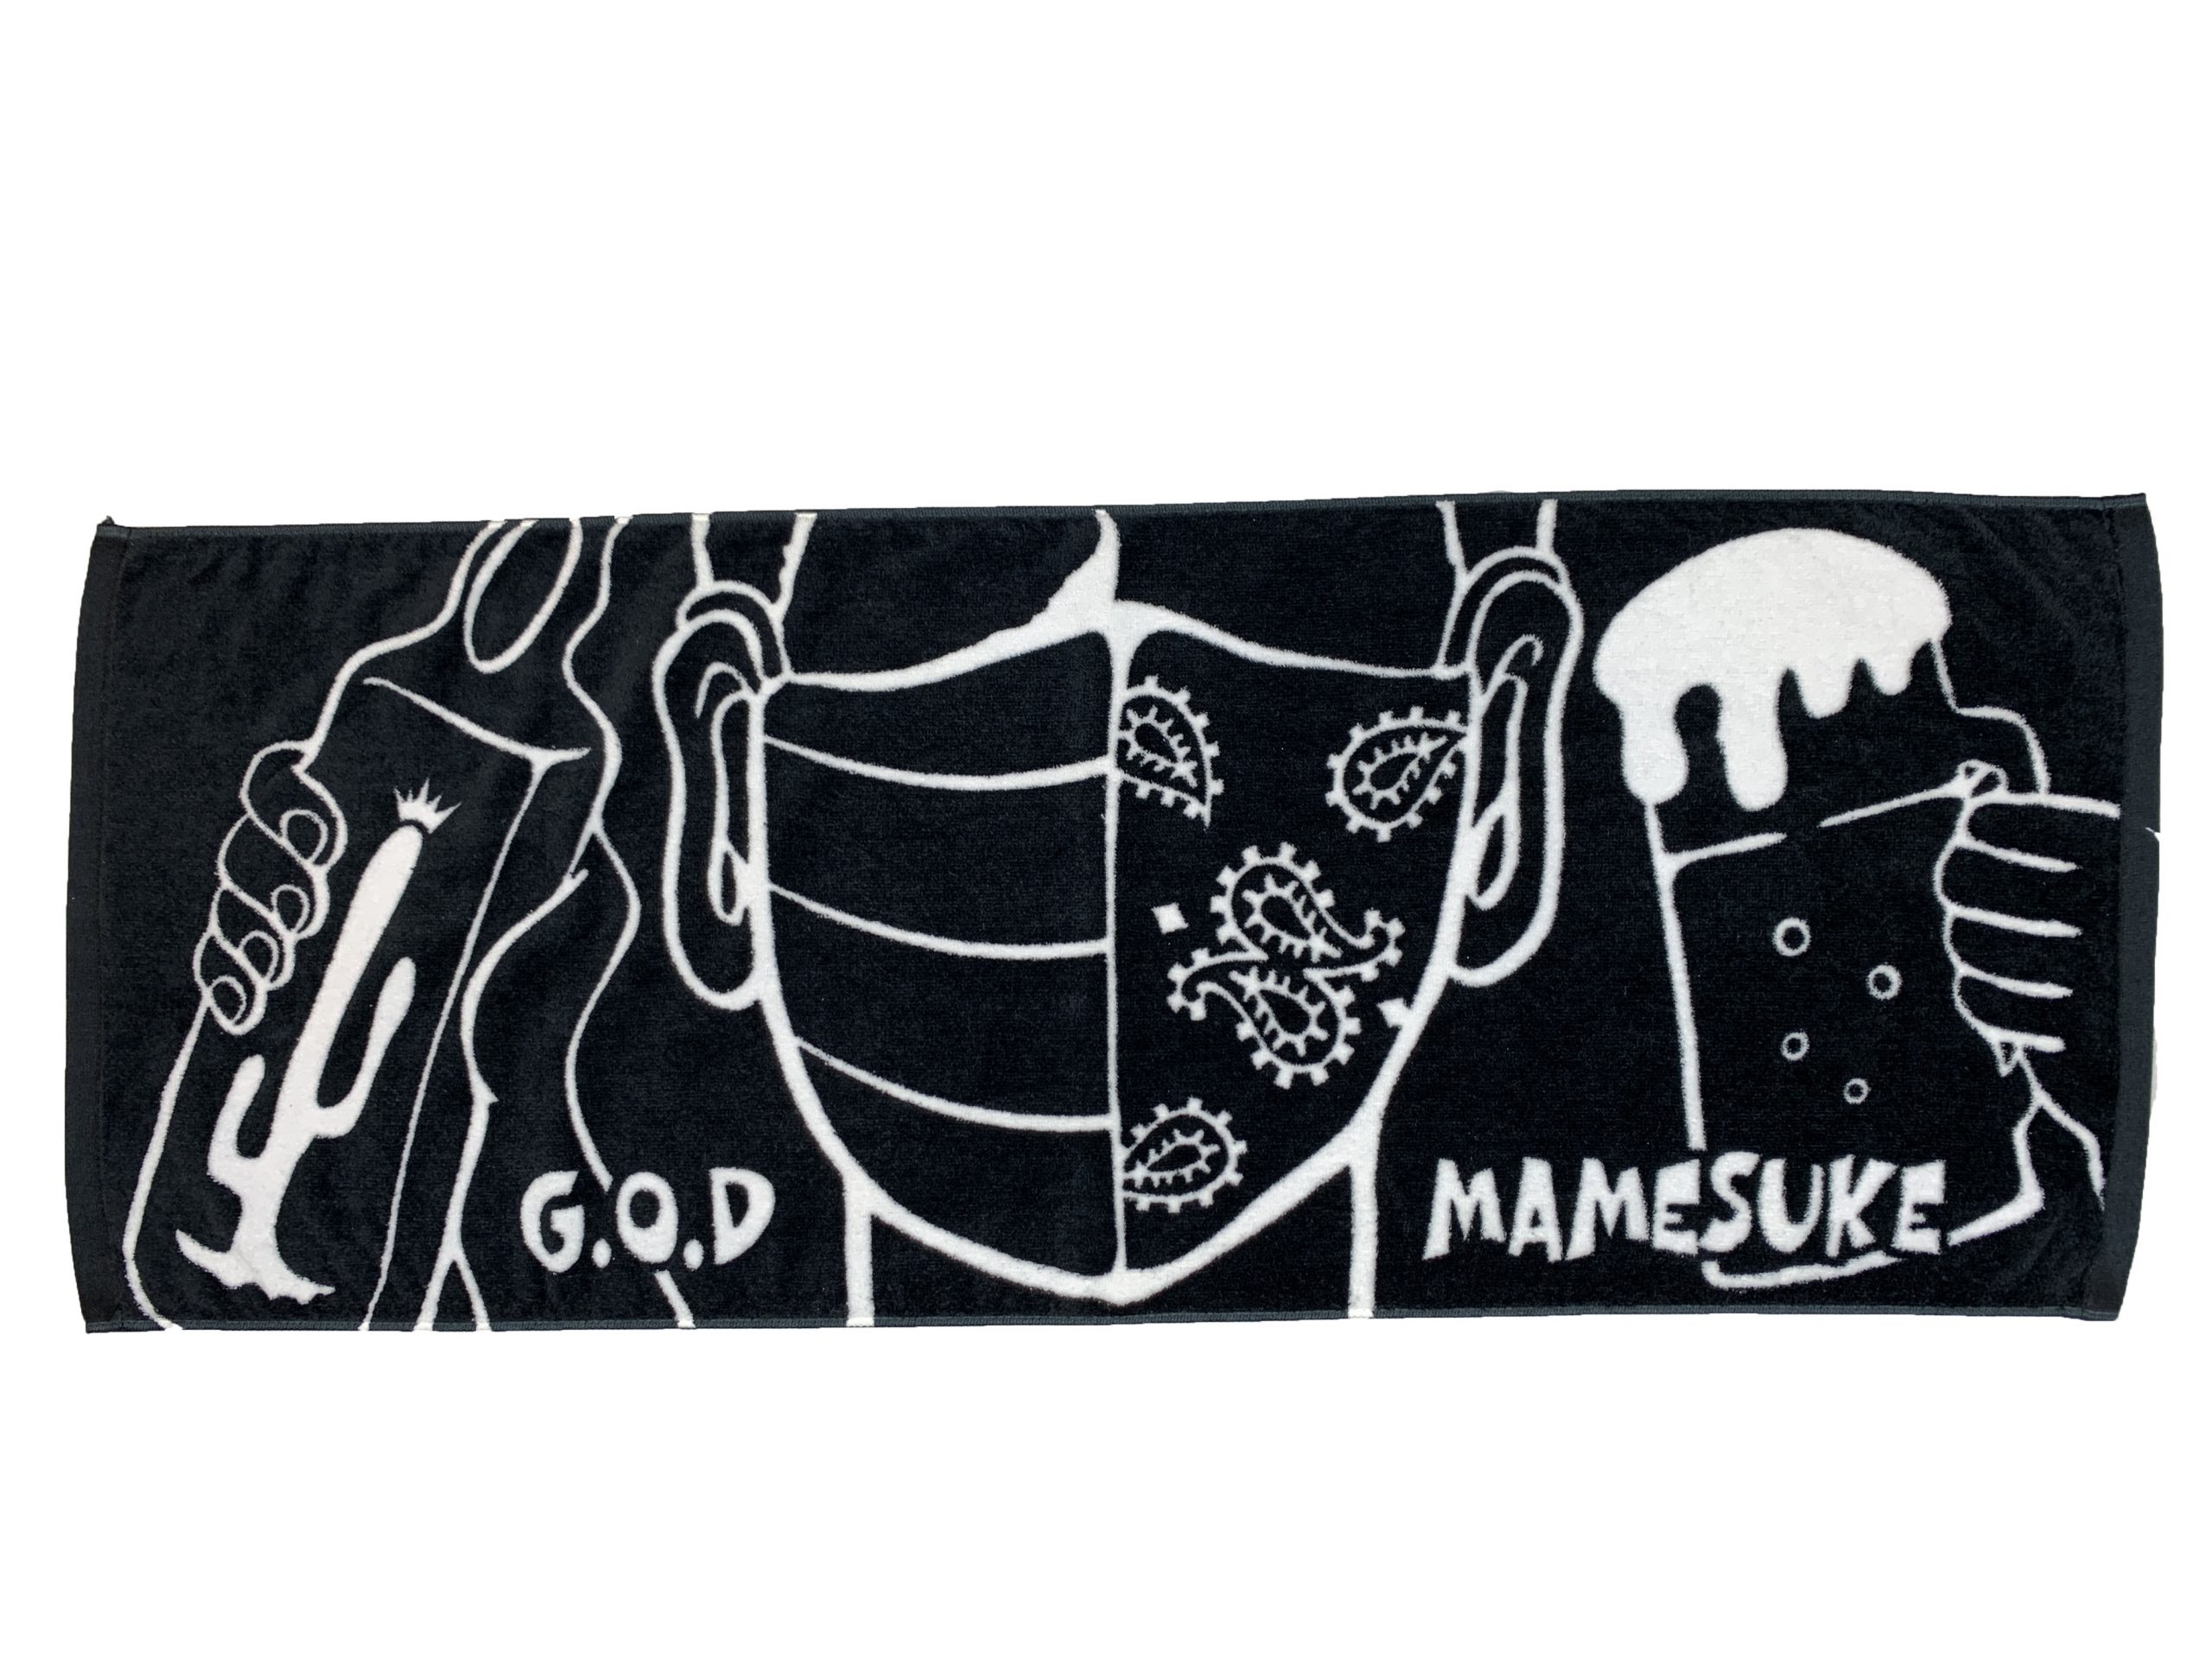 mamesuke_god_towel